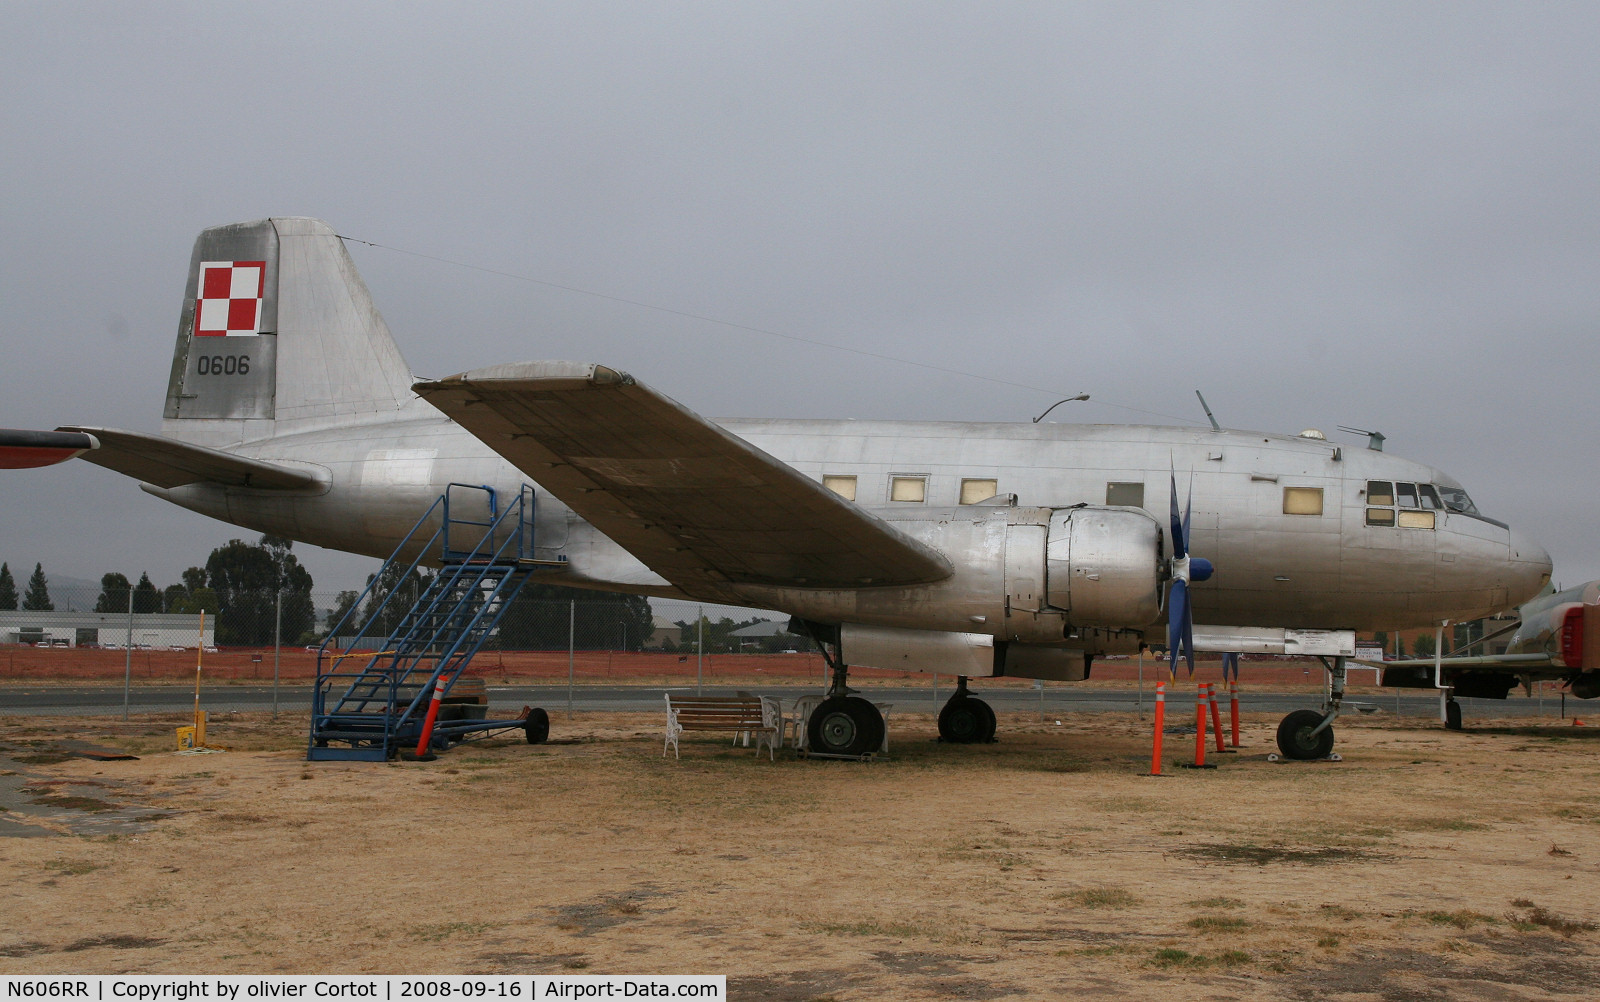 N606RR, Ilyushin Il-14 C/N 14800606, Pacific coast air museum, Santa Rosa